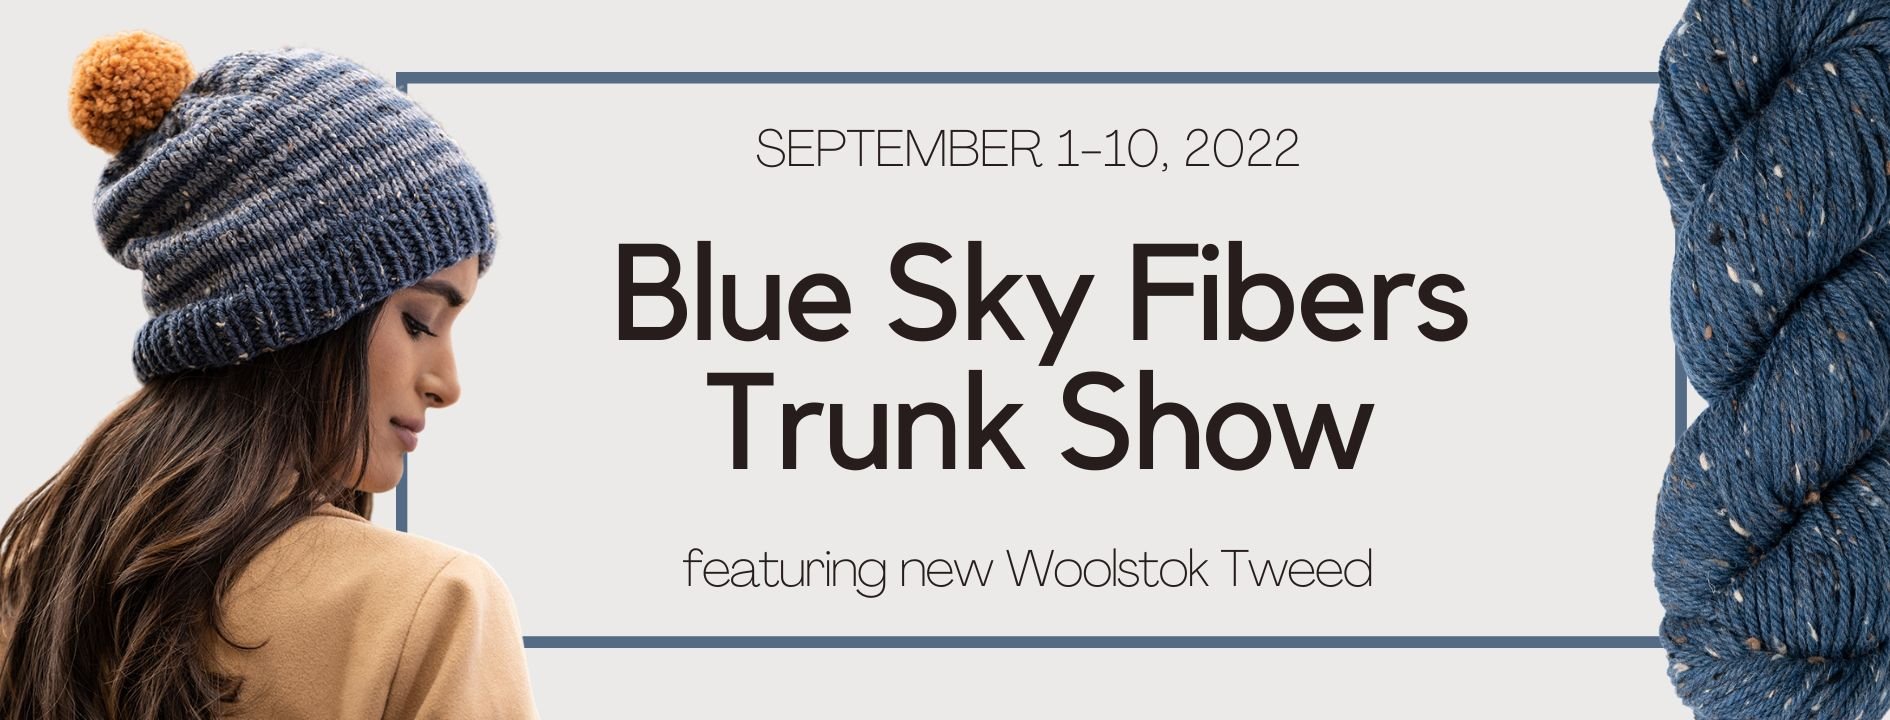 https://michiganfineyarns.com/cdn/shop/articles/blue-sky-fibers-woolstok-tweed-trunk-show-september-1-10-924231.jpg?v=1670443752